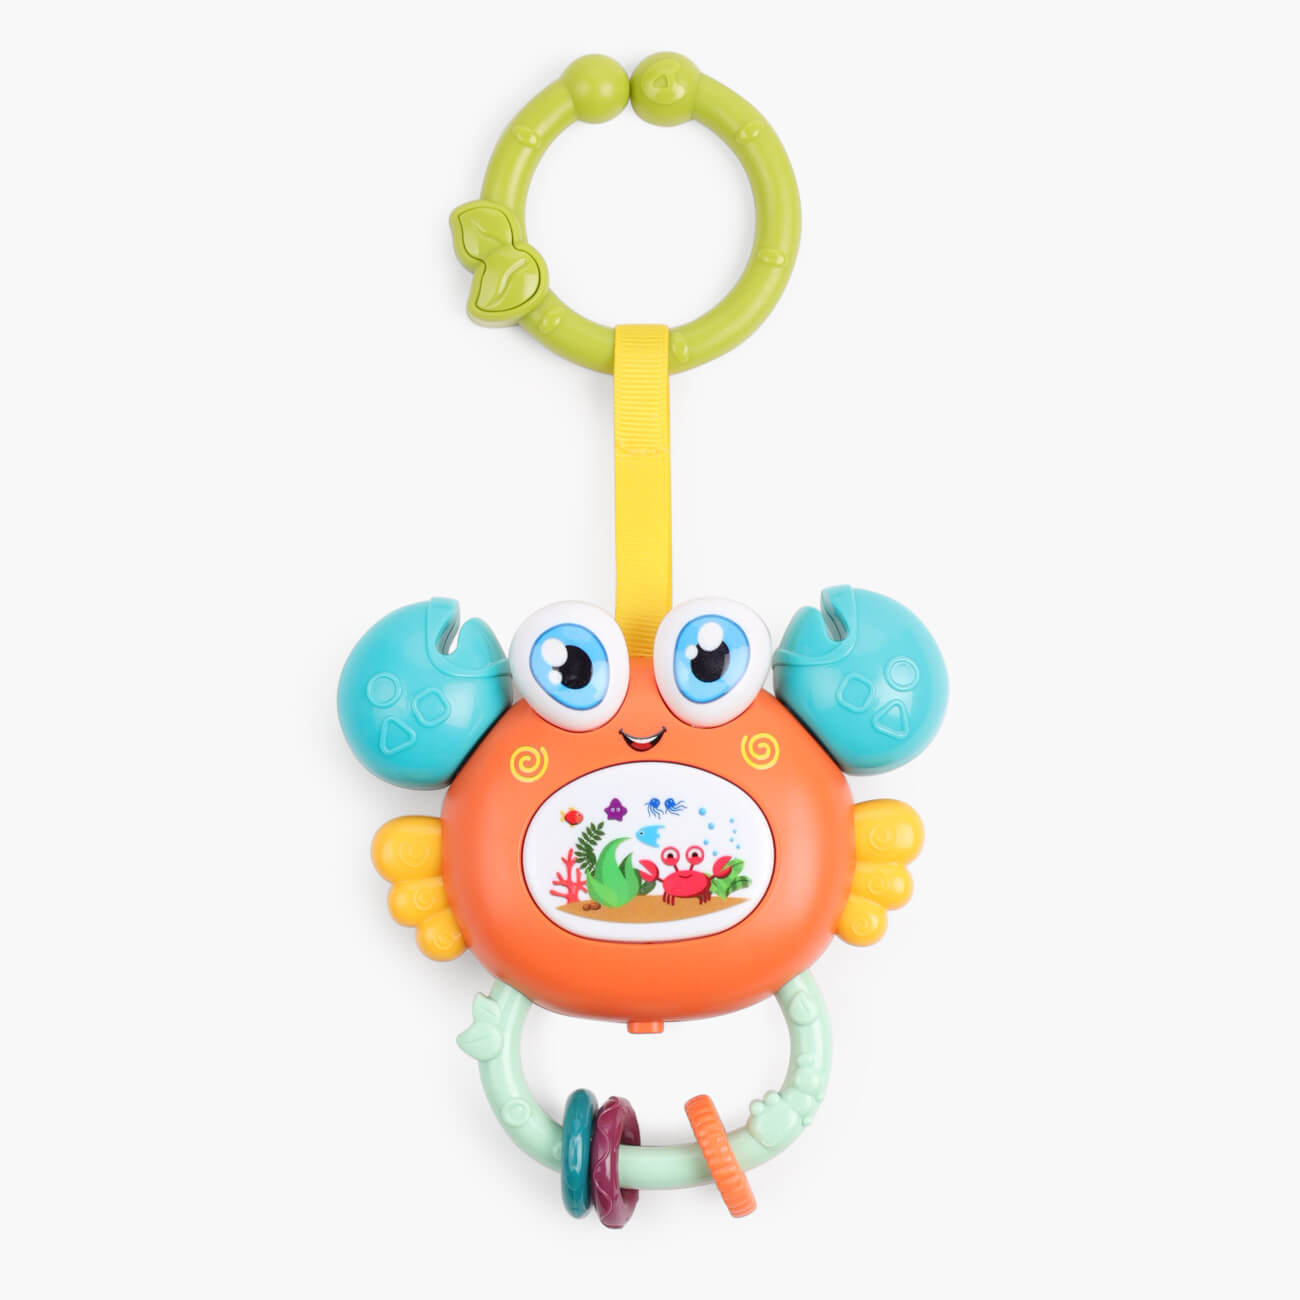 Игрушка развивающая, 11х12 см, музыкальная, пластик, оранжевый, Крабик, Aquatic animals музыкальная игрушка весёлая лягушка звук свет